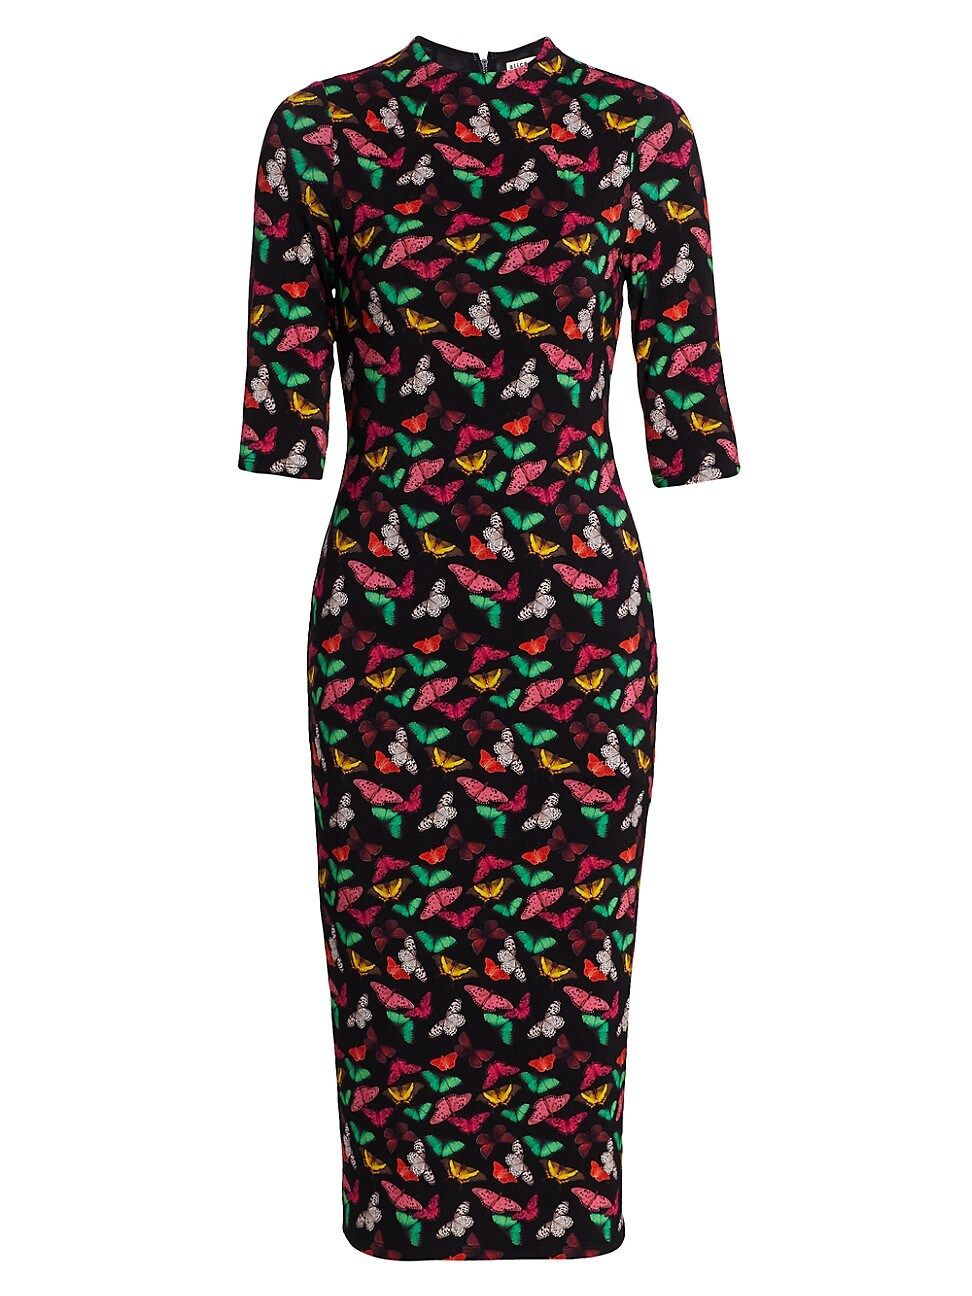 Alice + Olivia Women's Delora Knit Bodycon Dress - Small Butterflies - Size 10 | Saks Fifth Avenue